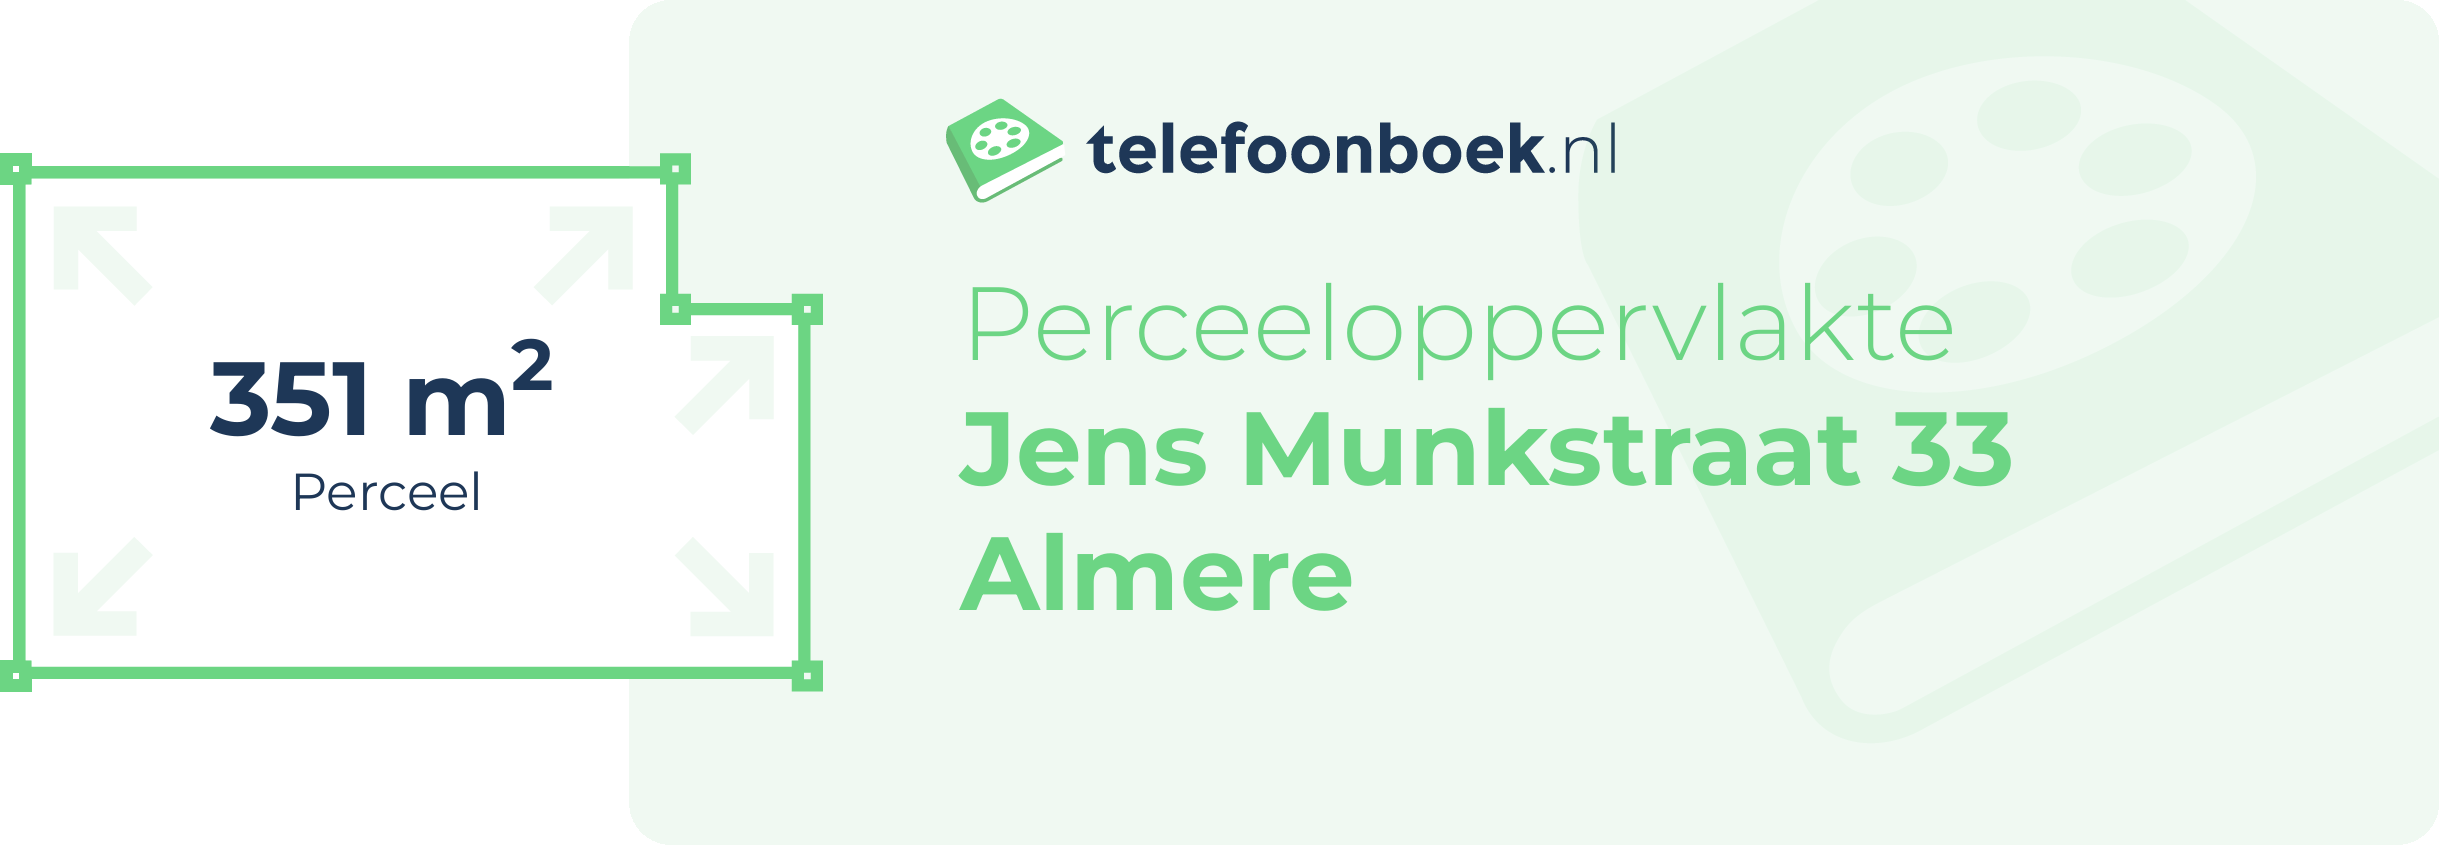 Perceeloppervlakte Jens Munkstraat 33 Almere